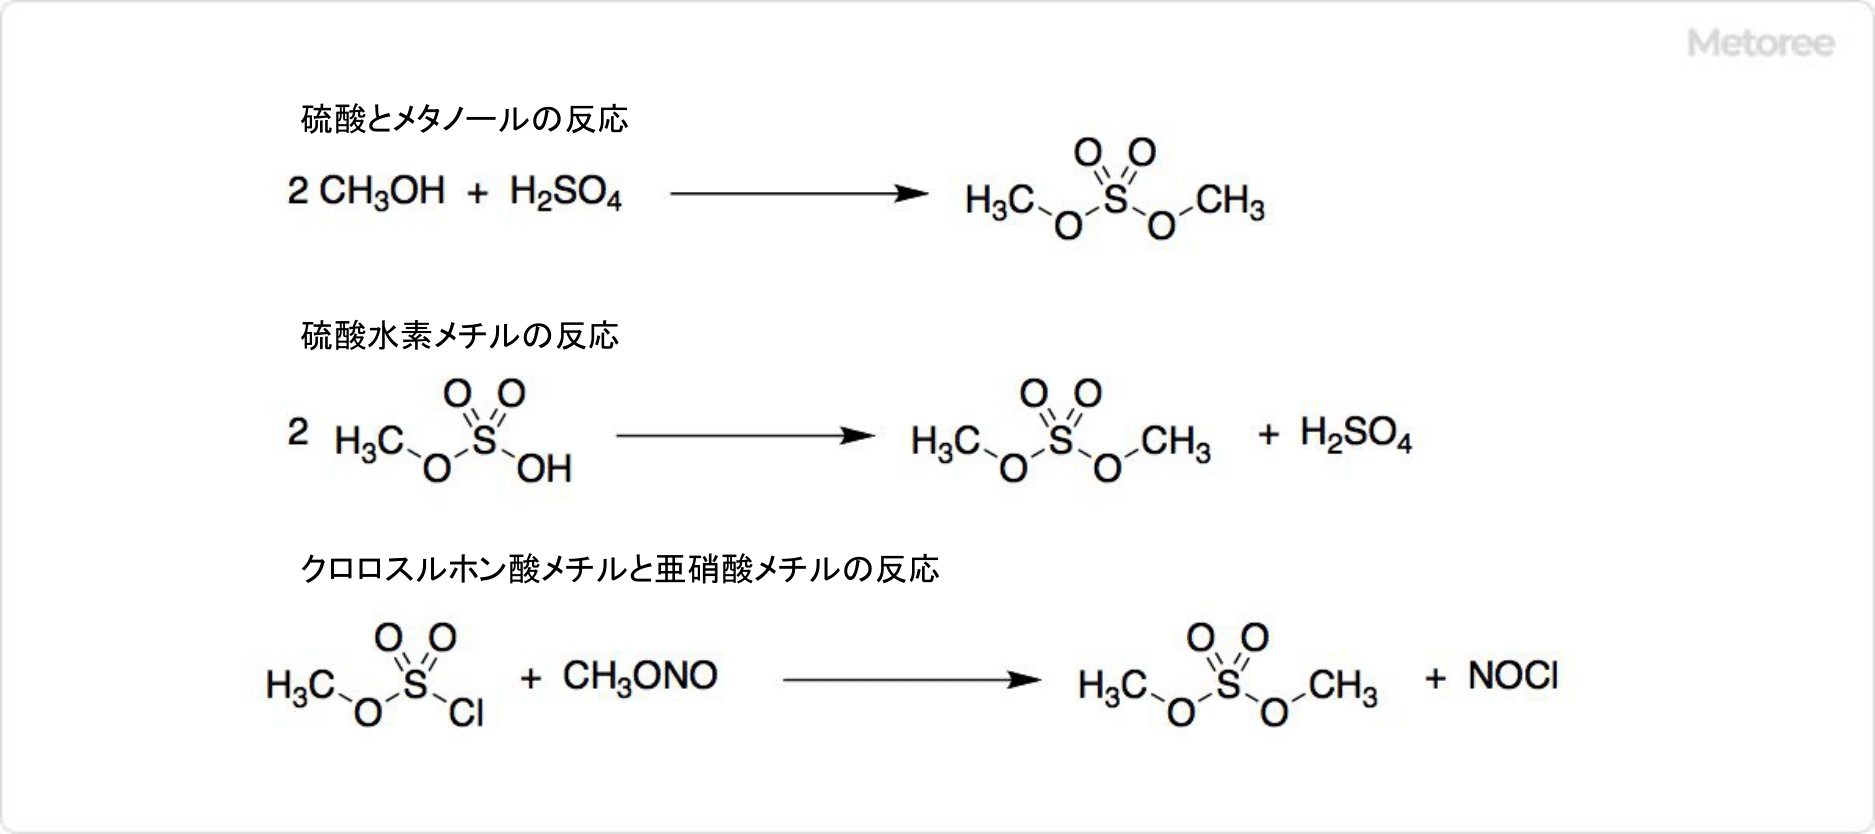 硫酸ジメチルの合成